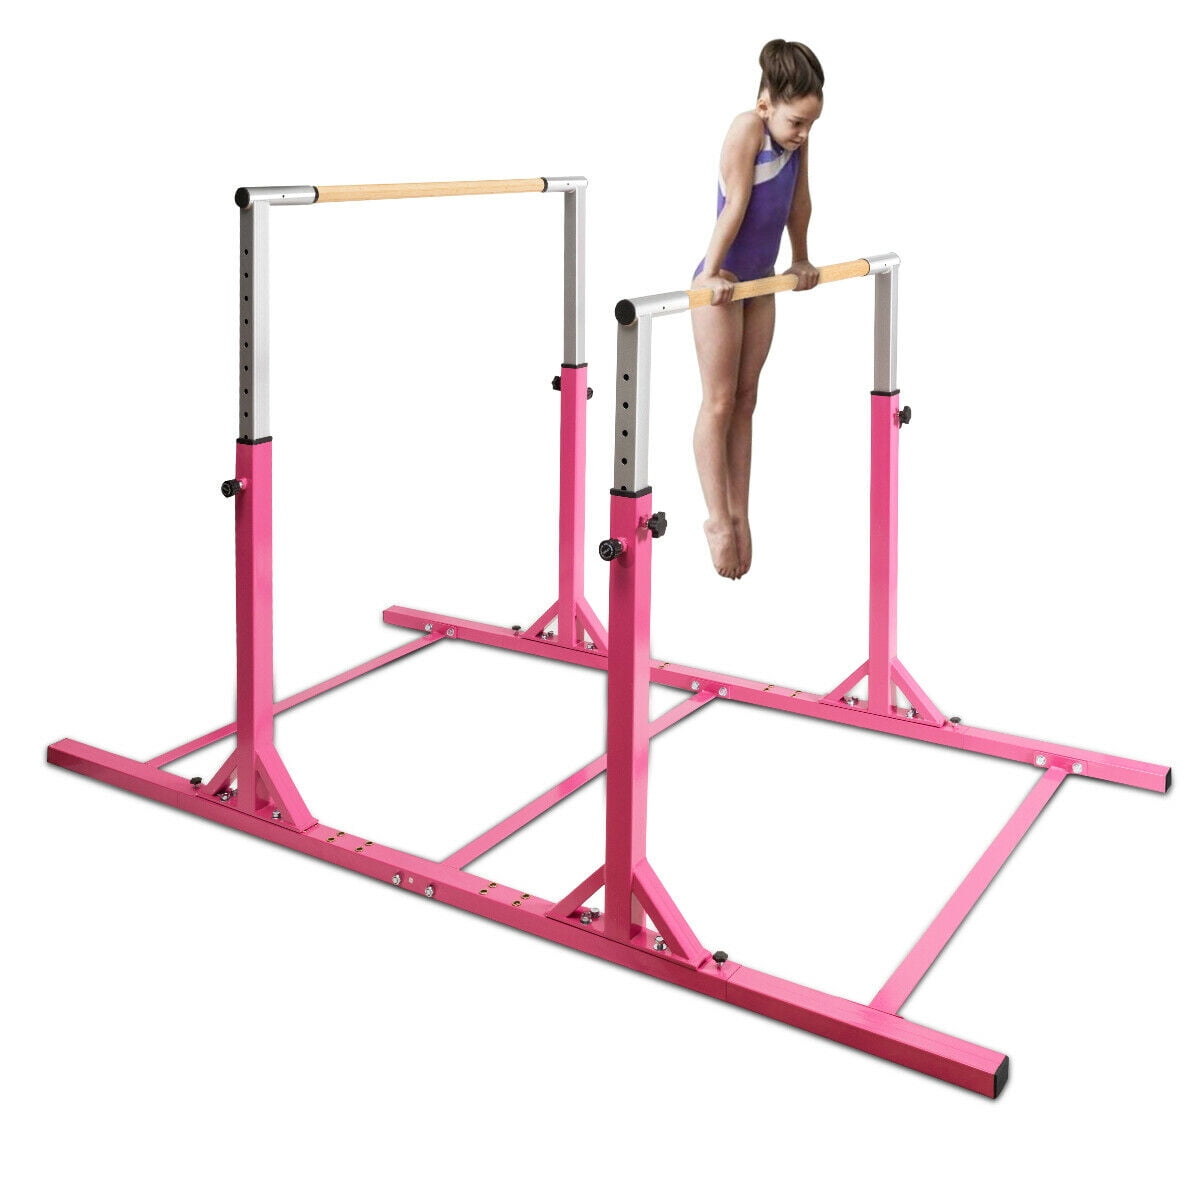 Costway Kids Gymnastics Parallel Bars, Double Horizontal Bars Adjustable Width Height